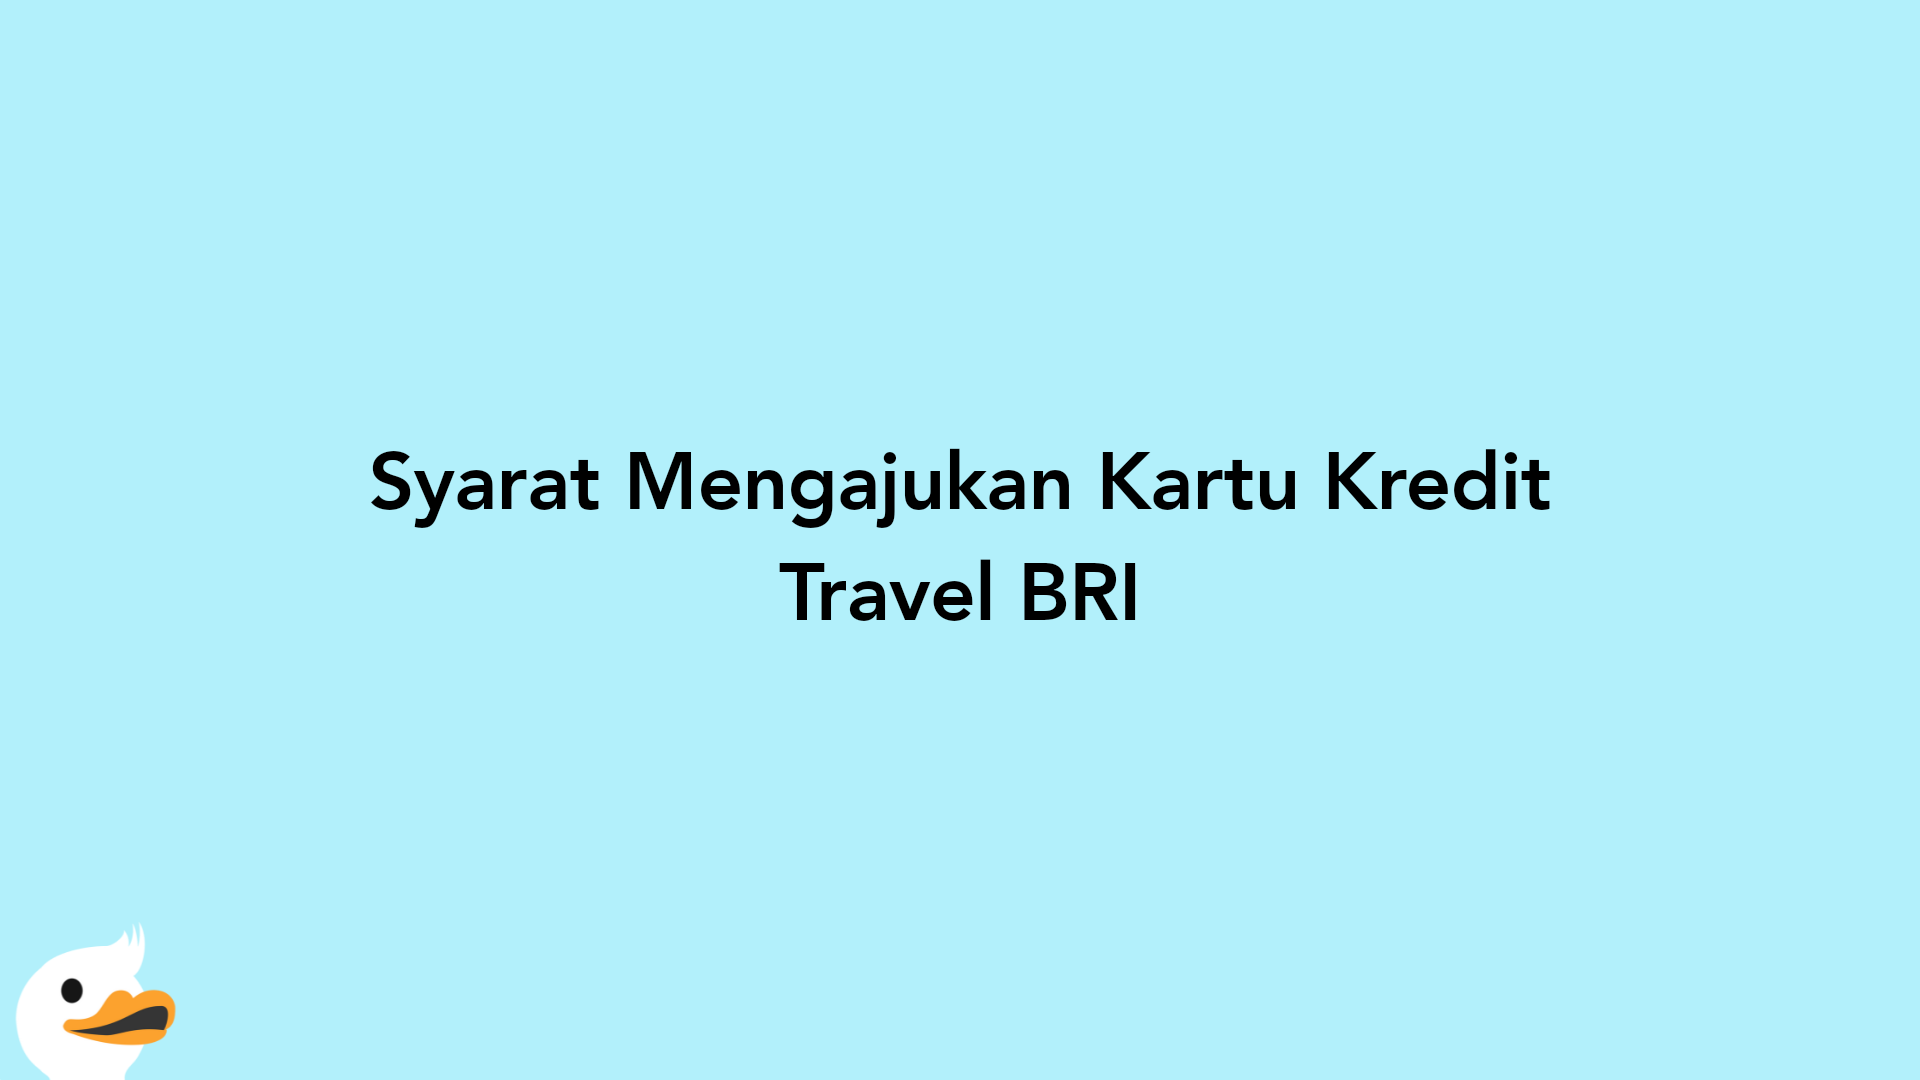 Syarat Mengajukan Kartu Kredit Travel BRI